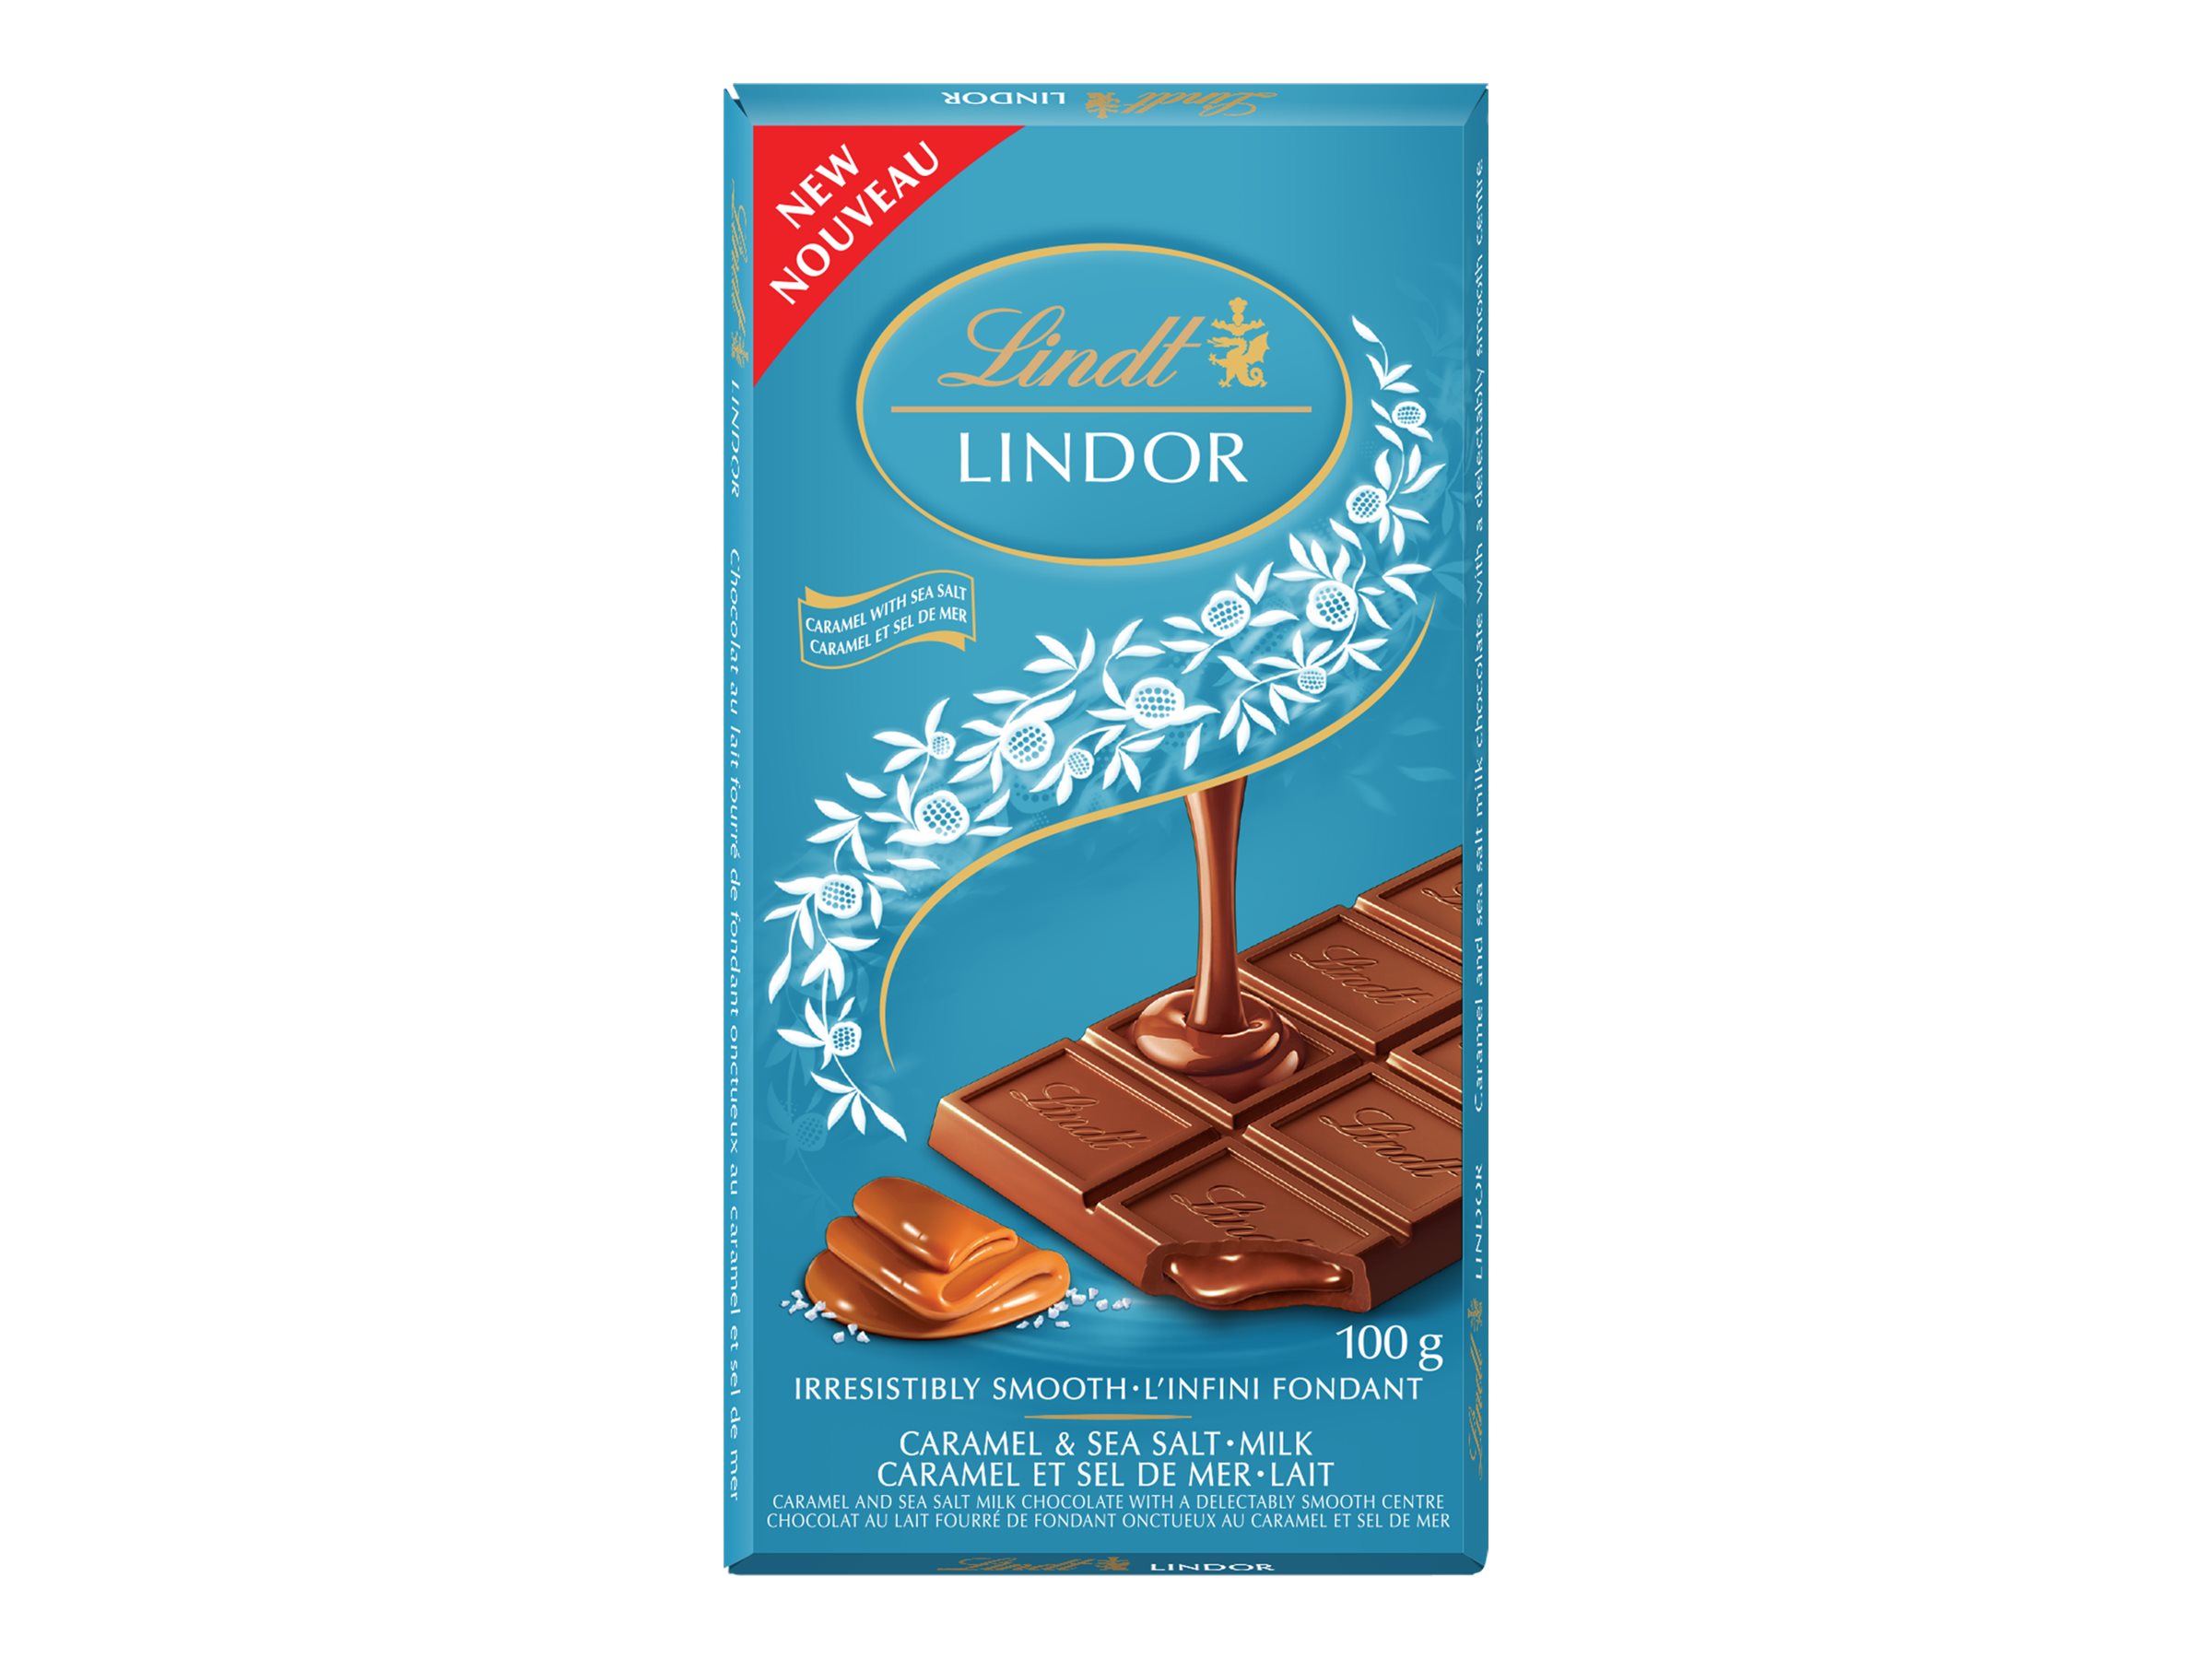 Lindt LINDOR Milk Chocolate Bar - Caramel & Sea Salt - 100g